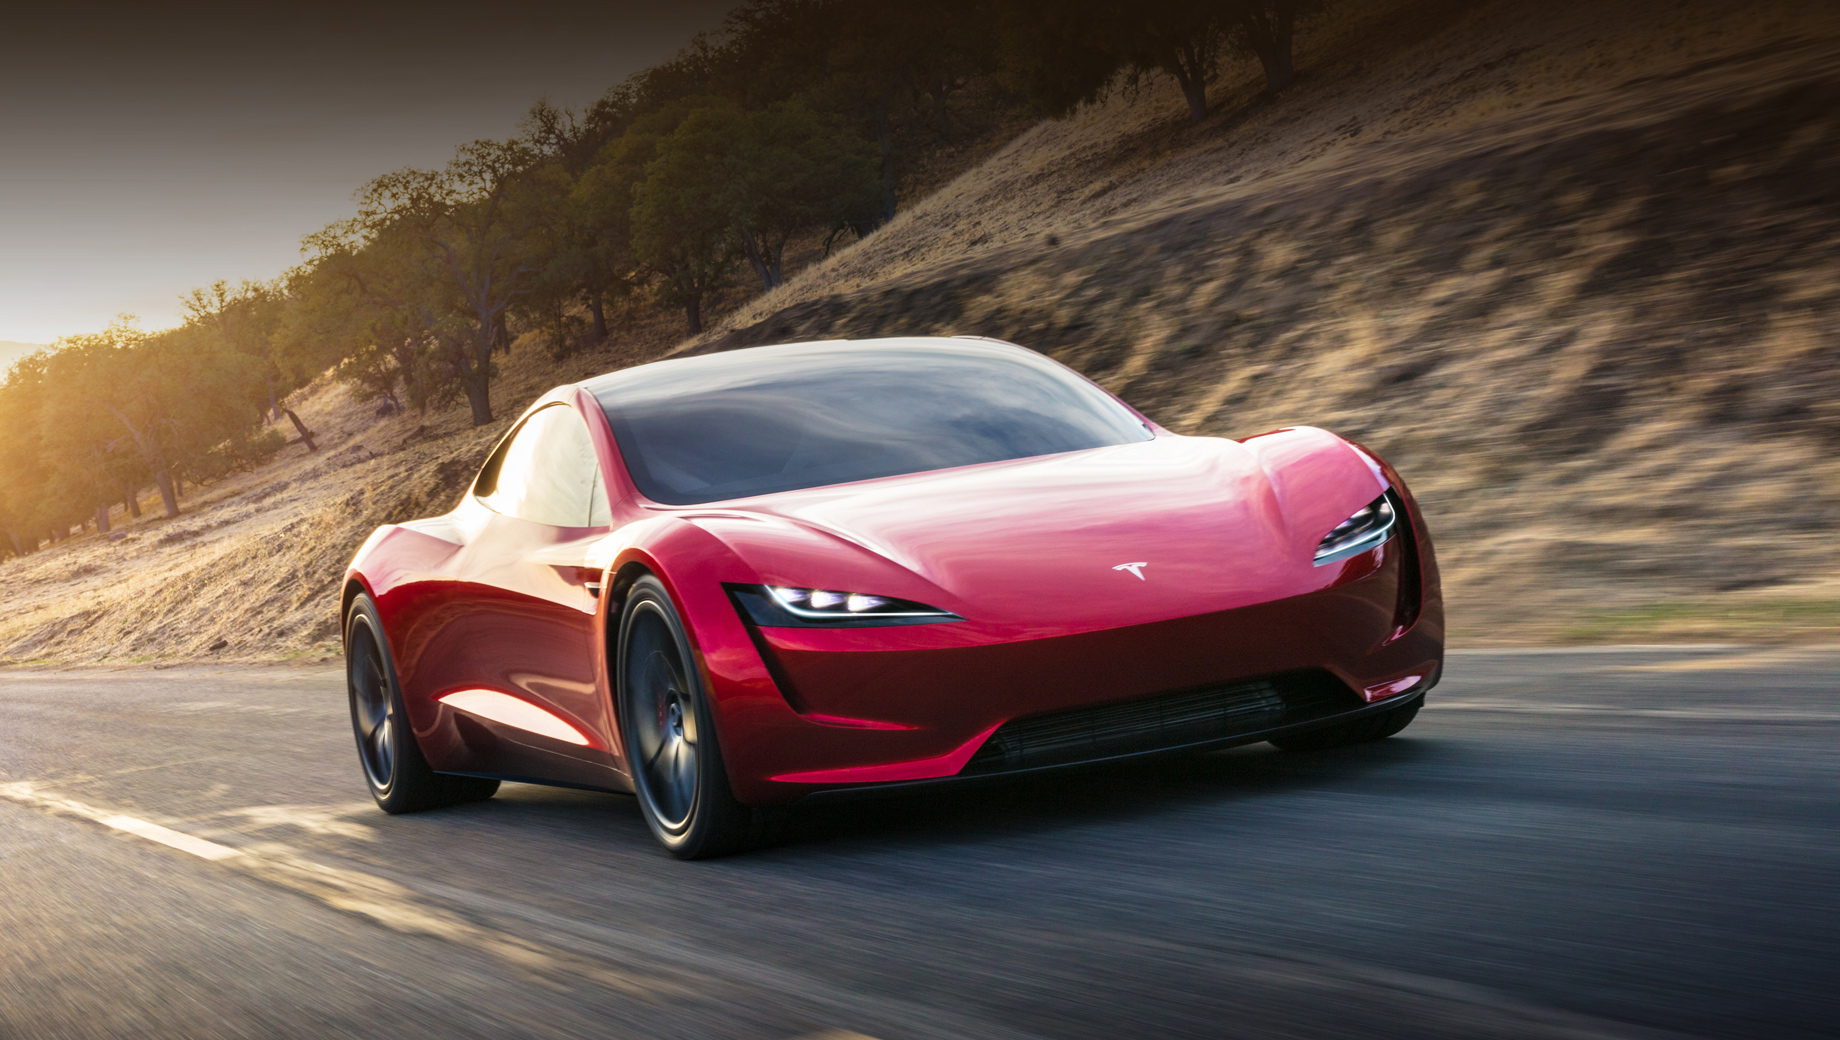 Tesla roadster. Цены пока остаются на уровне заявленных. Roadster в приветственной серии из 1000 экземпляров Founders Editions будет стоить $250 000 (17,9 млн рублей), а обычные версии — $200 000 (14,3 млн рублей).